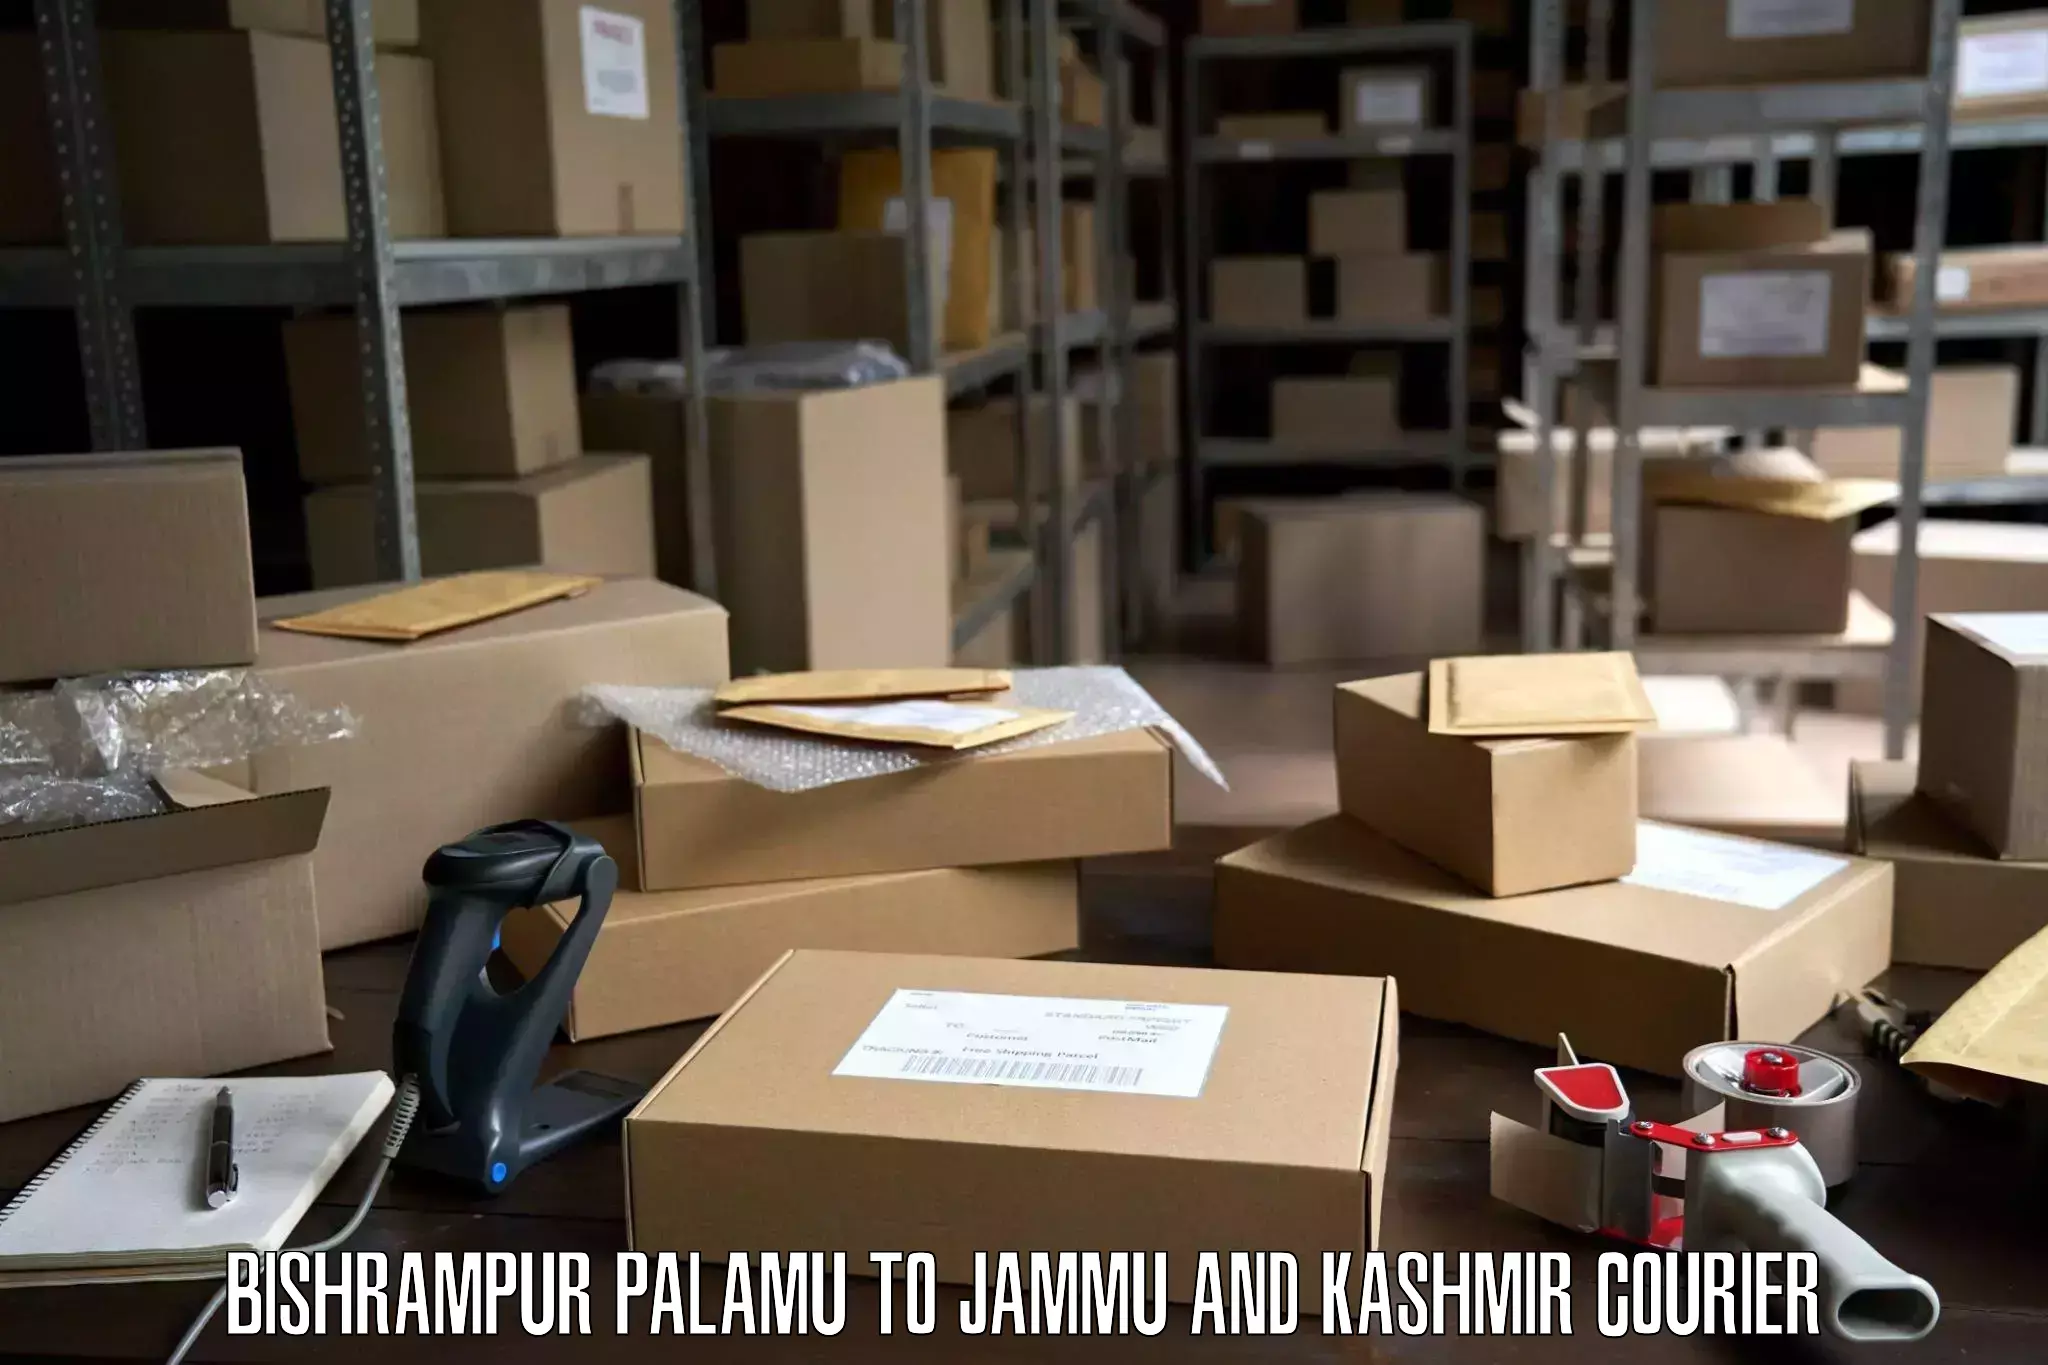 Residential moving experts Bishrampur Palamu to University of Kashmir Srinagar